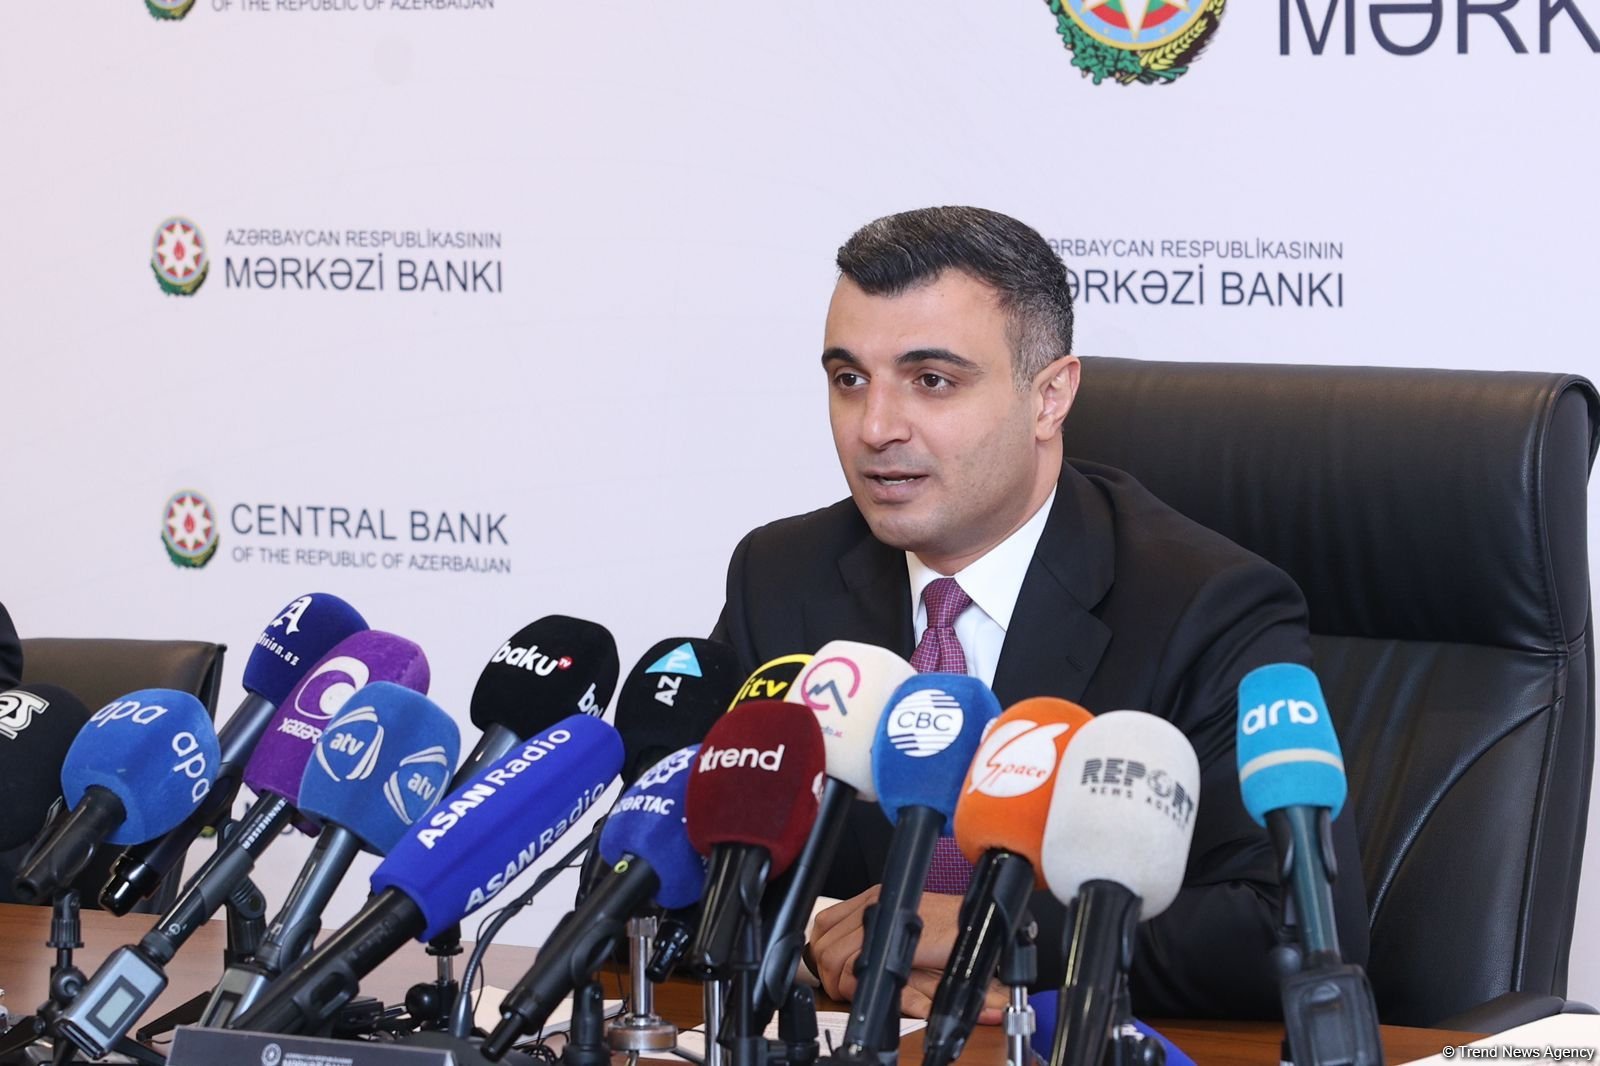 ЦБА изучает востребованность в Азербайджане в "зеленых" кредитах и облигациях